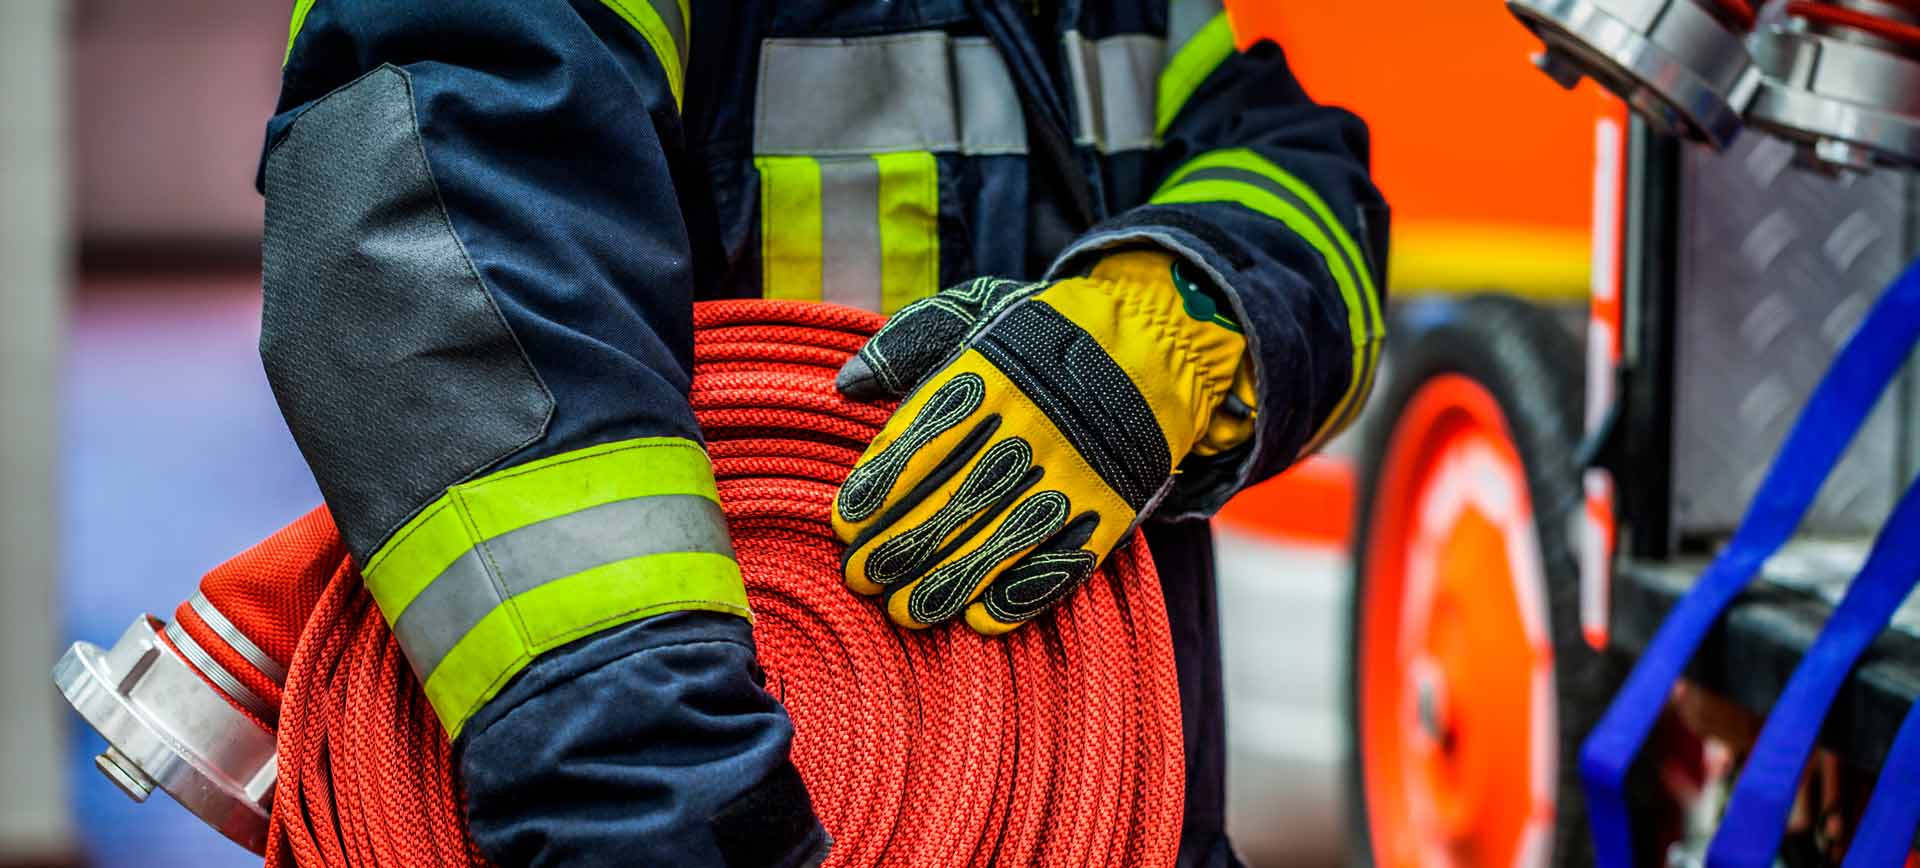 Automaattiset paloilmoitukset säästivät 16 miljoonan euron palovahingoilta